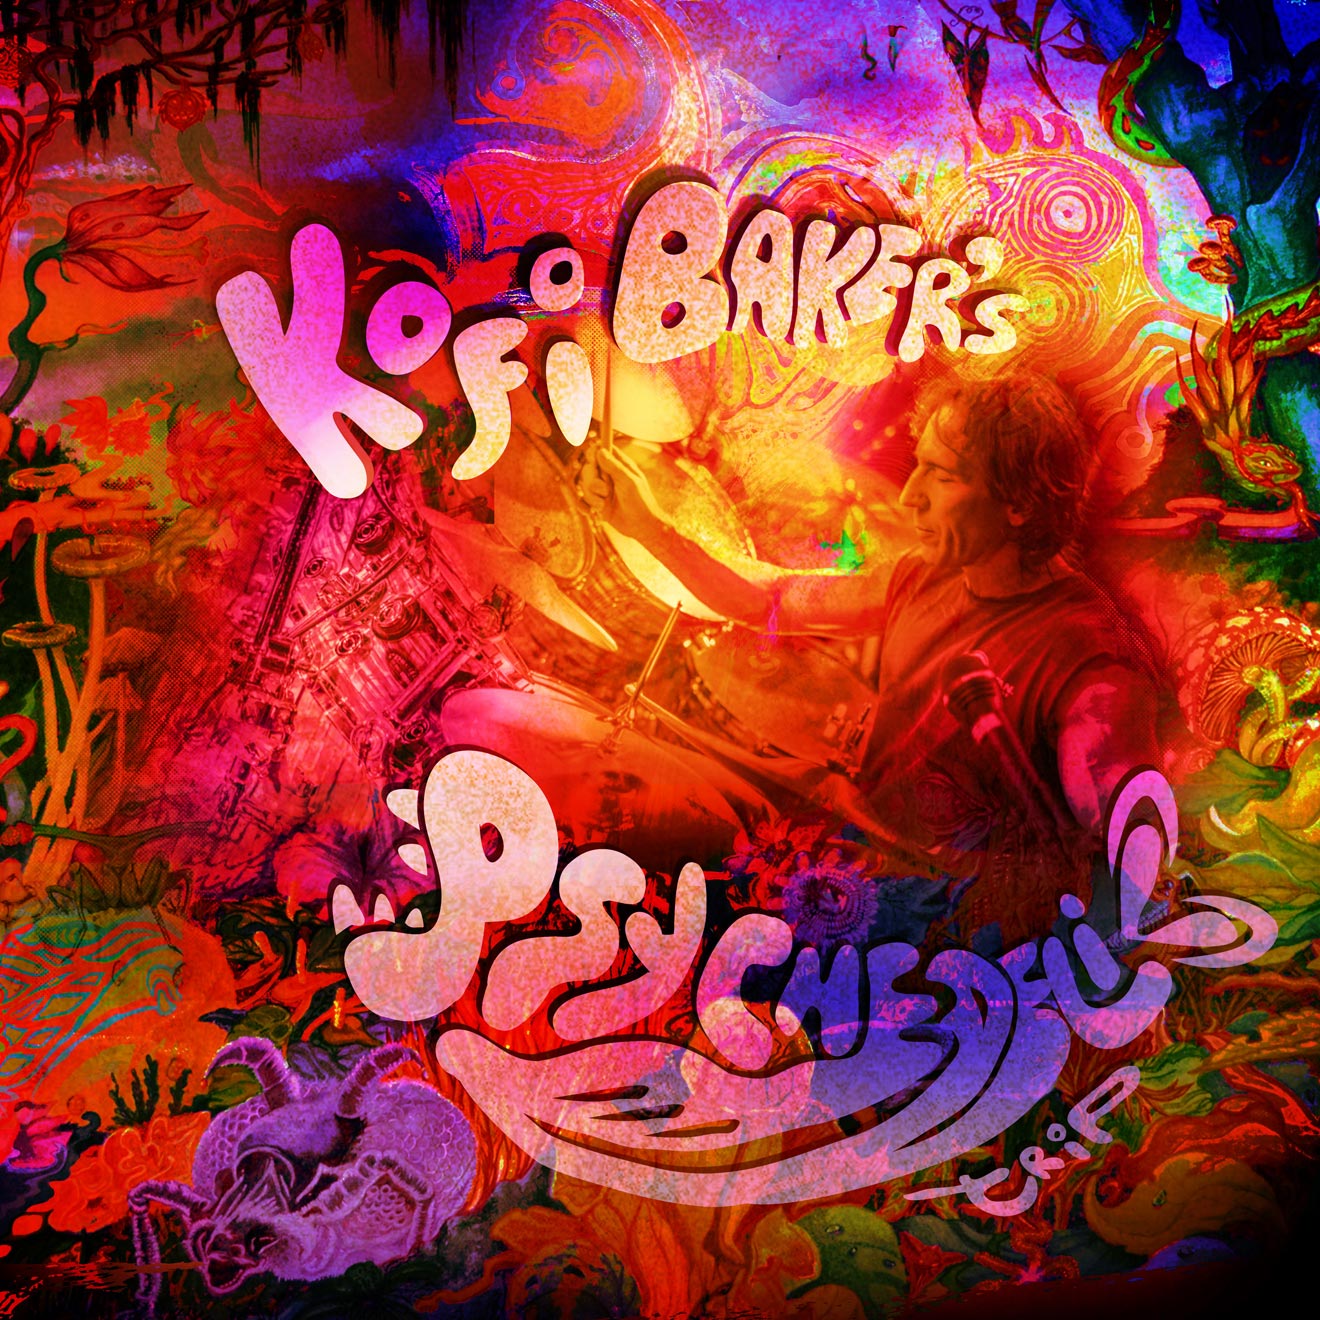 Kofi Baker Tour promo poster